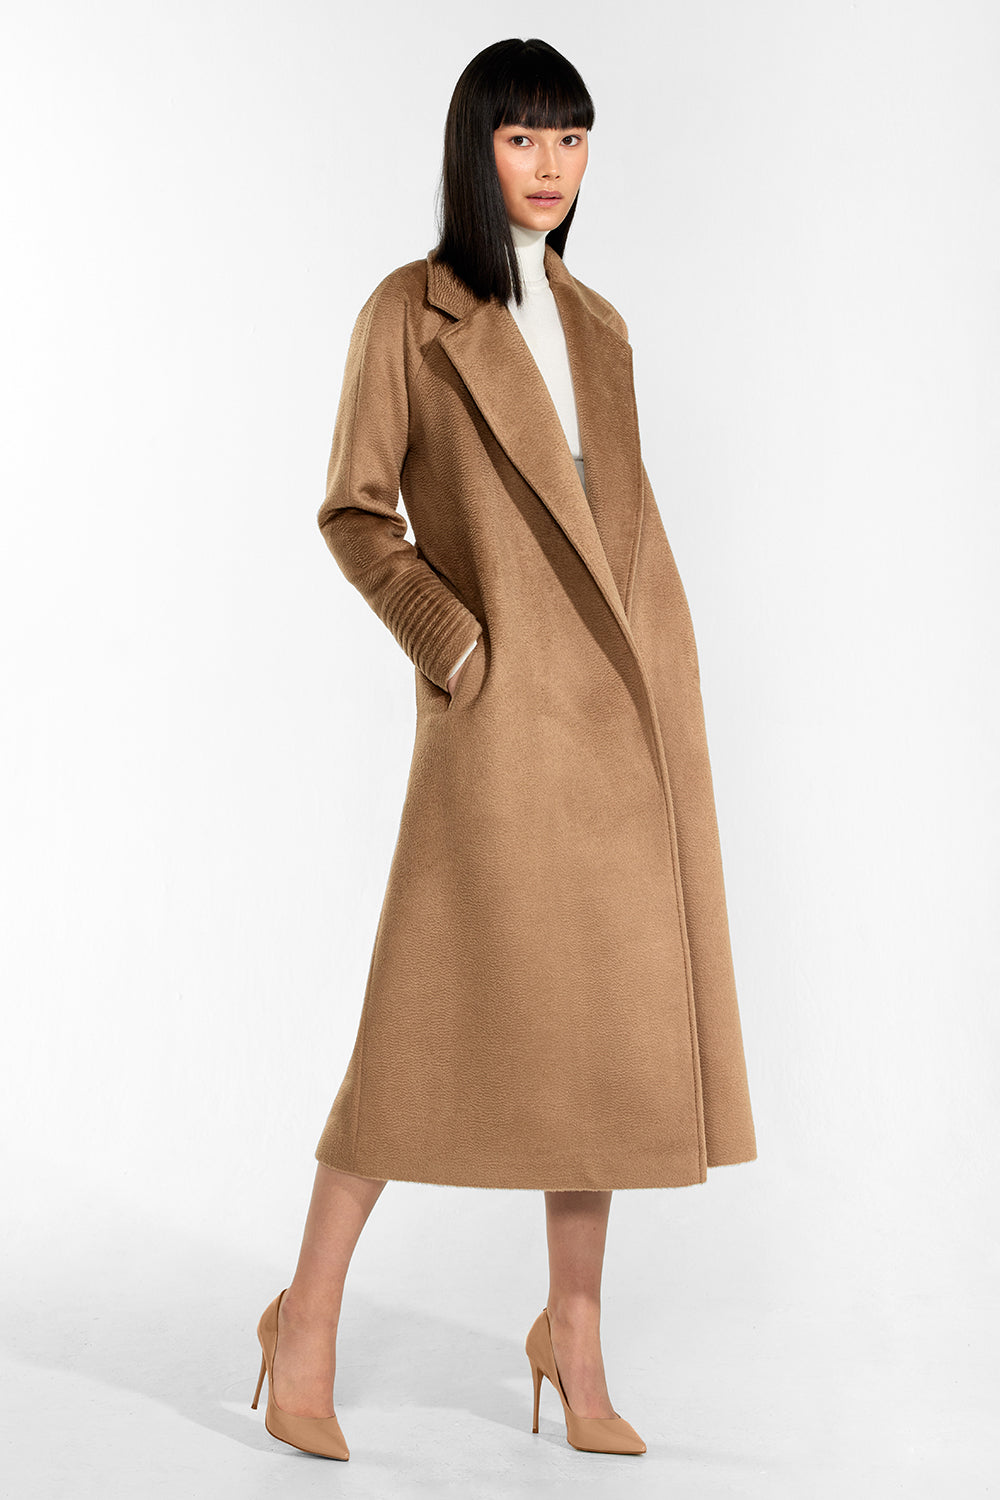 Alpacia Long Shawl/Coat